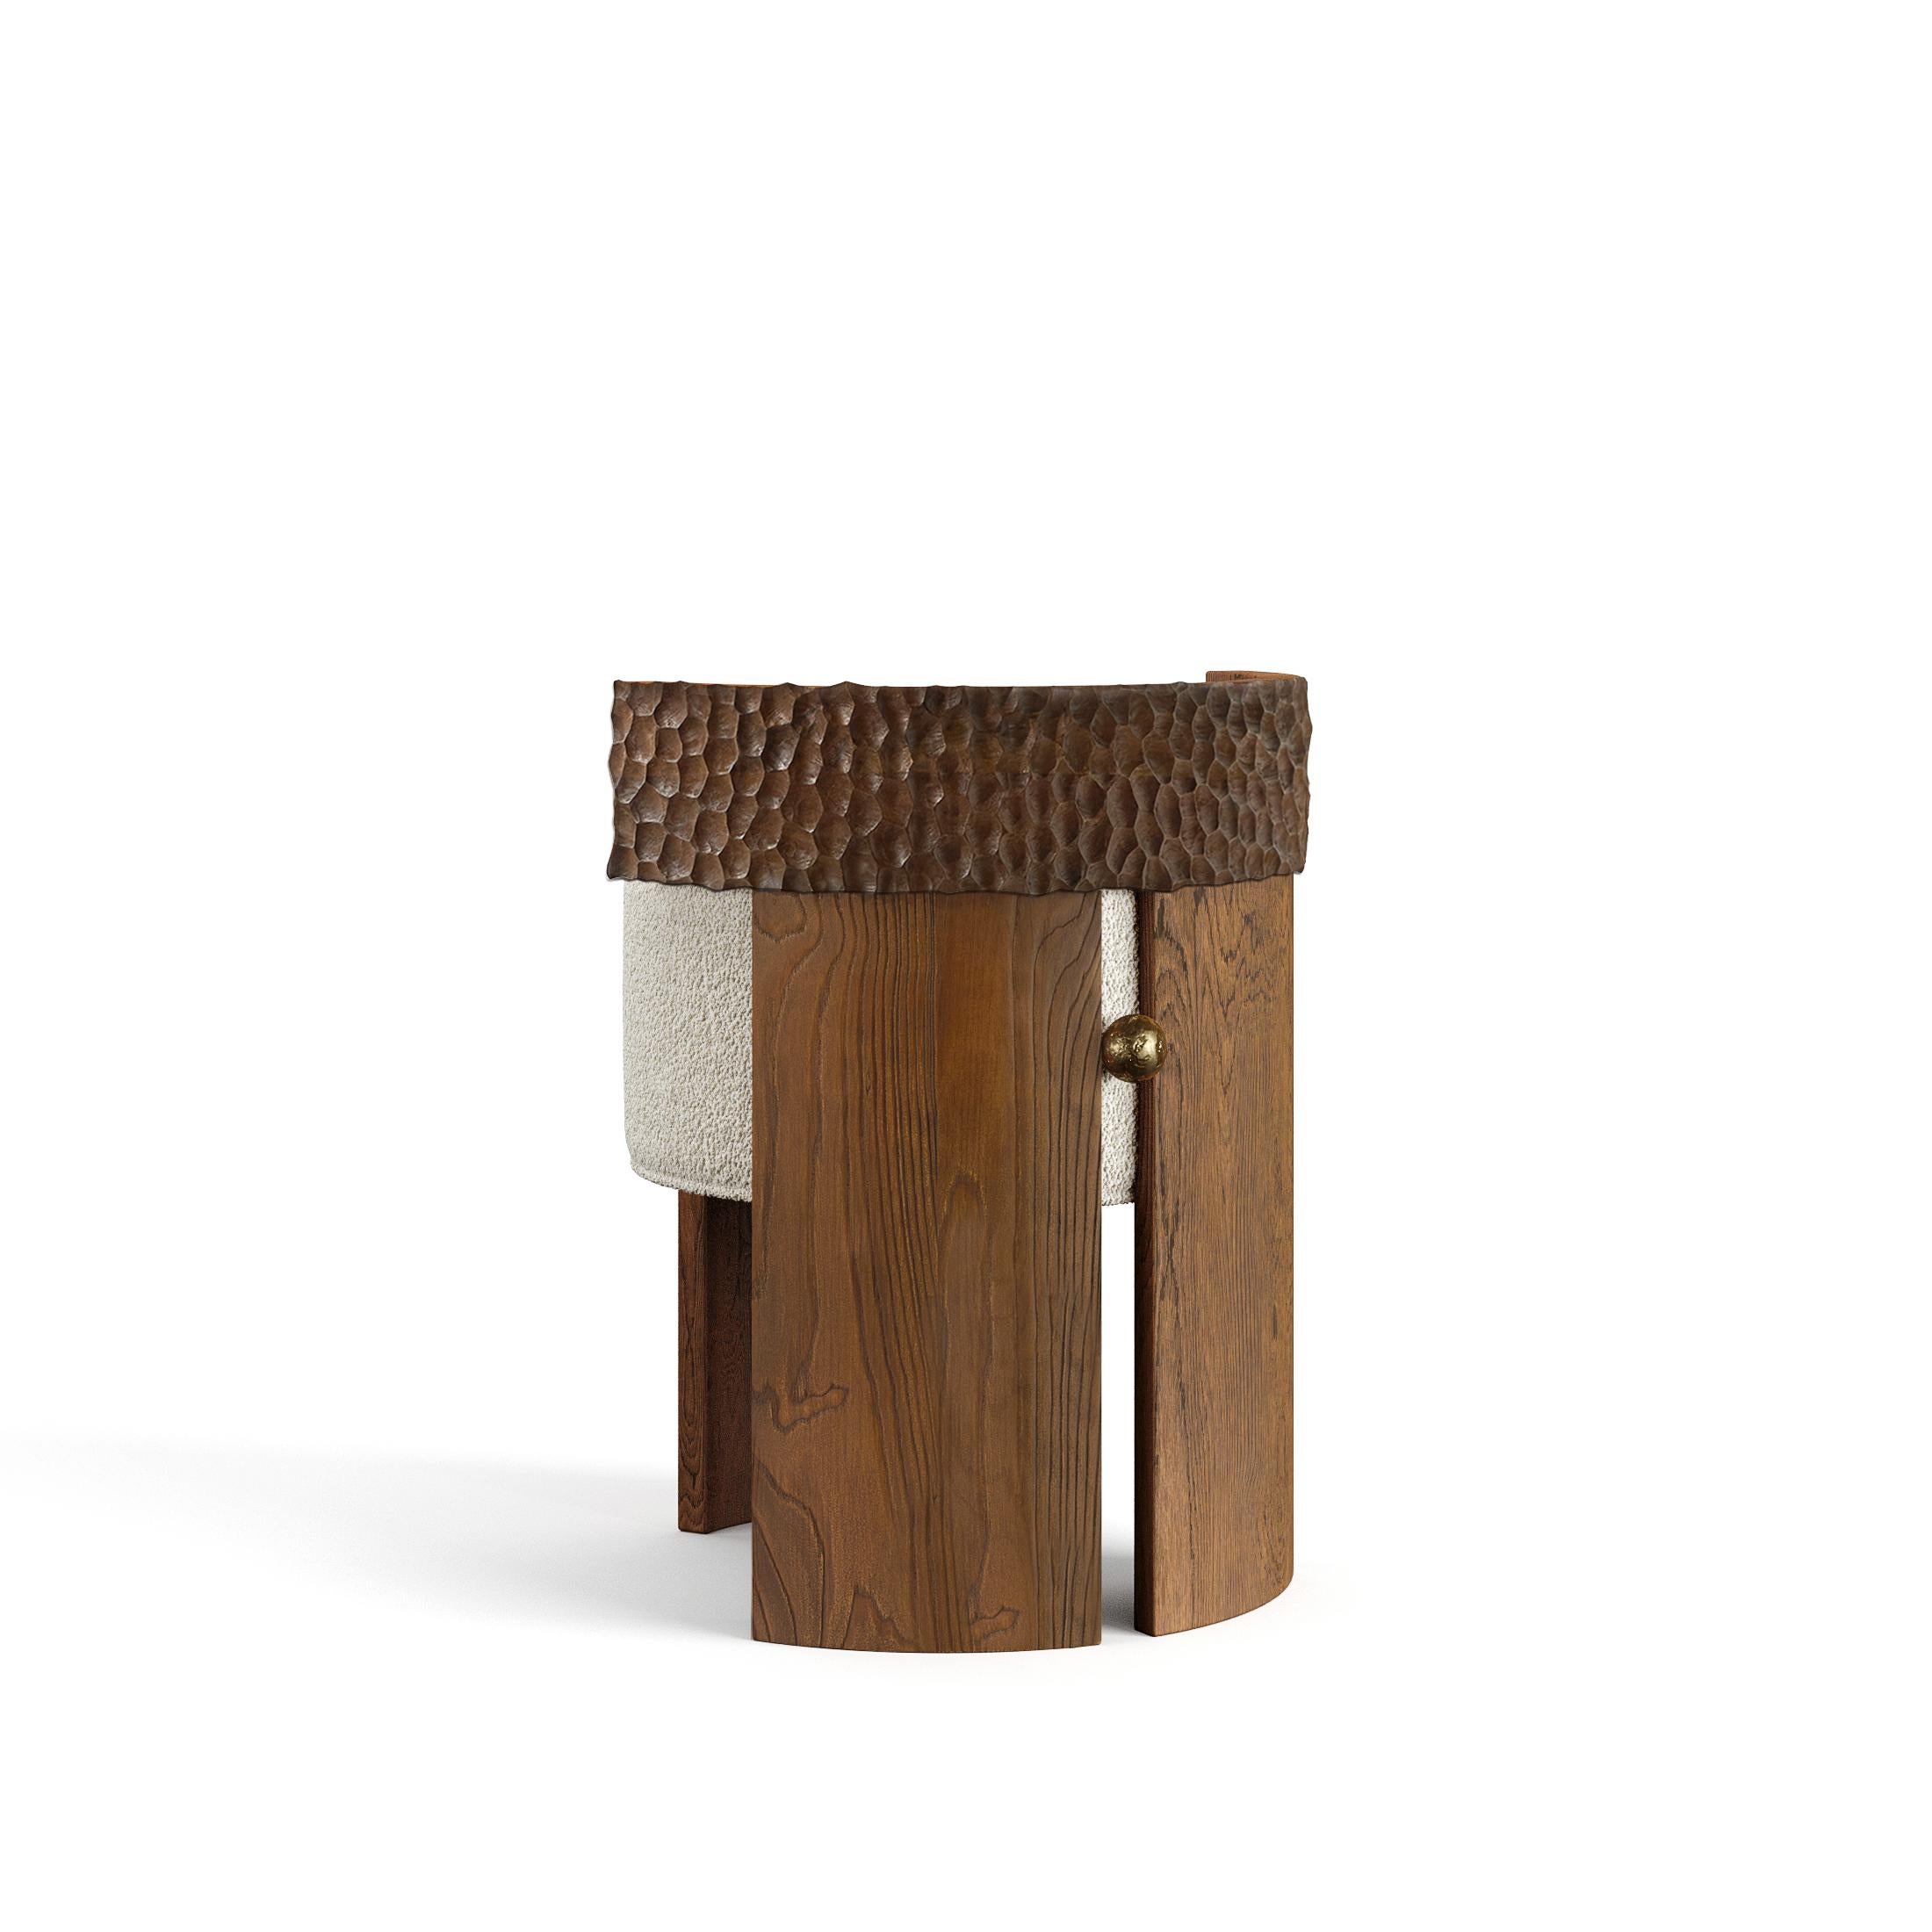 Le tabouret Yumi est un meuble artisanal qui allie le bois massif et le bronze liquide pour un aspect unique. Le tabouret est fabriqué à l'aide de techniques traditionnelles telles que la sculpture à la main et le moulage, ce qui garantit que chaque